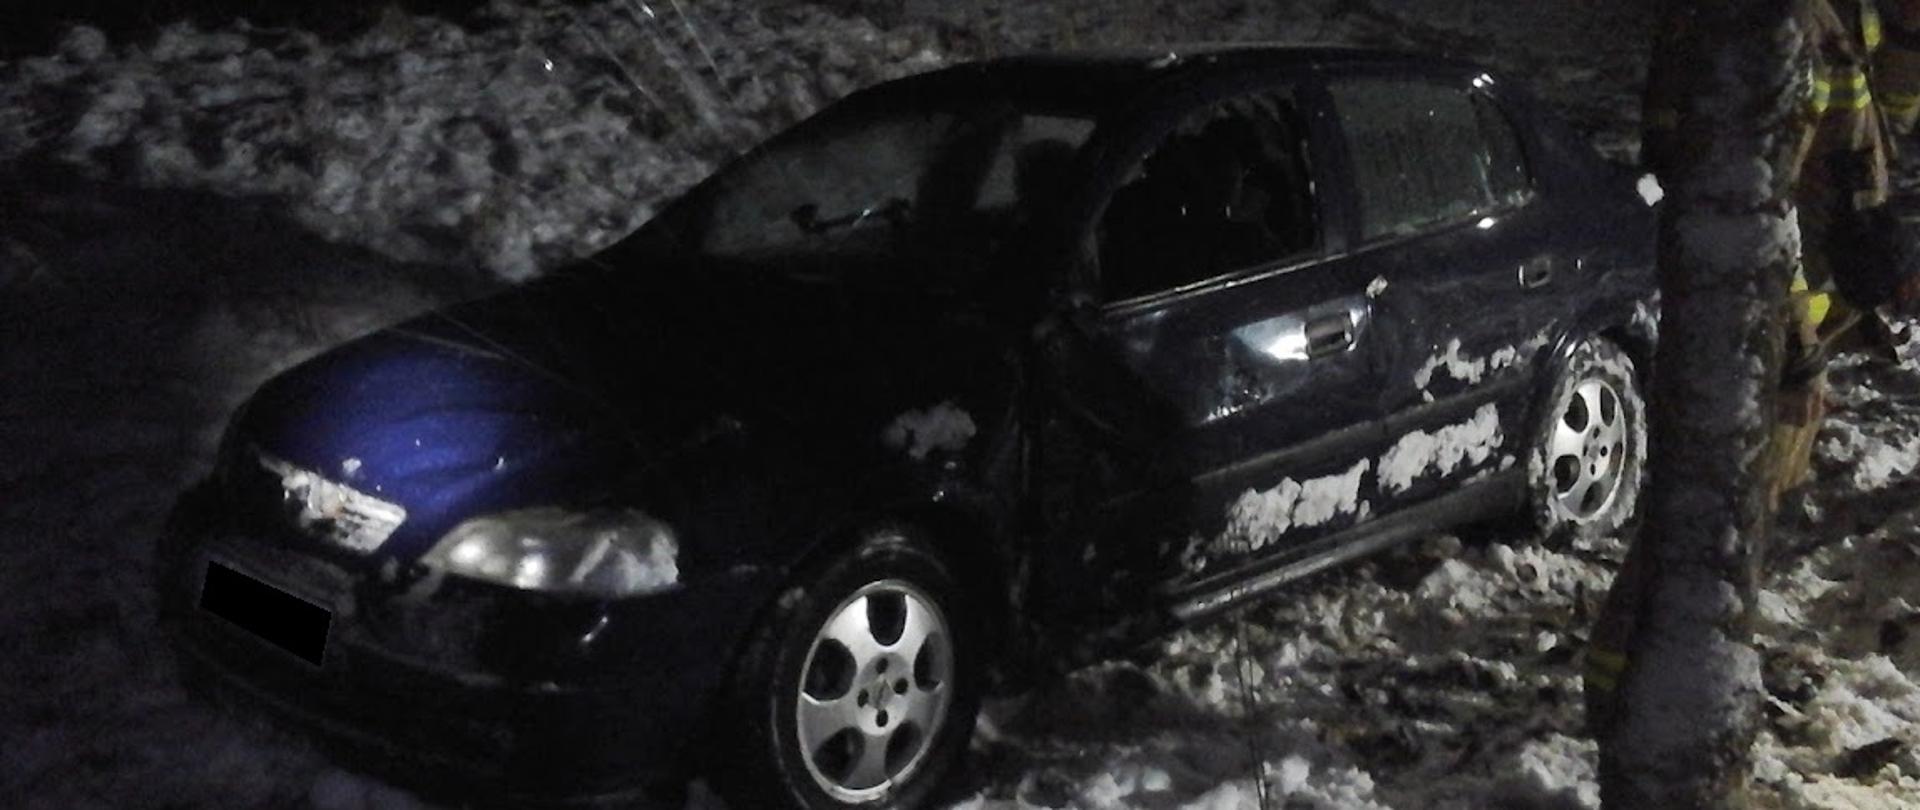 Samochód osobowy stoi na kołach na poboczu drogi. Wokół leży śnieg. Wybita szyba w drzwiach przednich od strony kierowcy. 